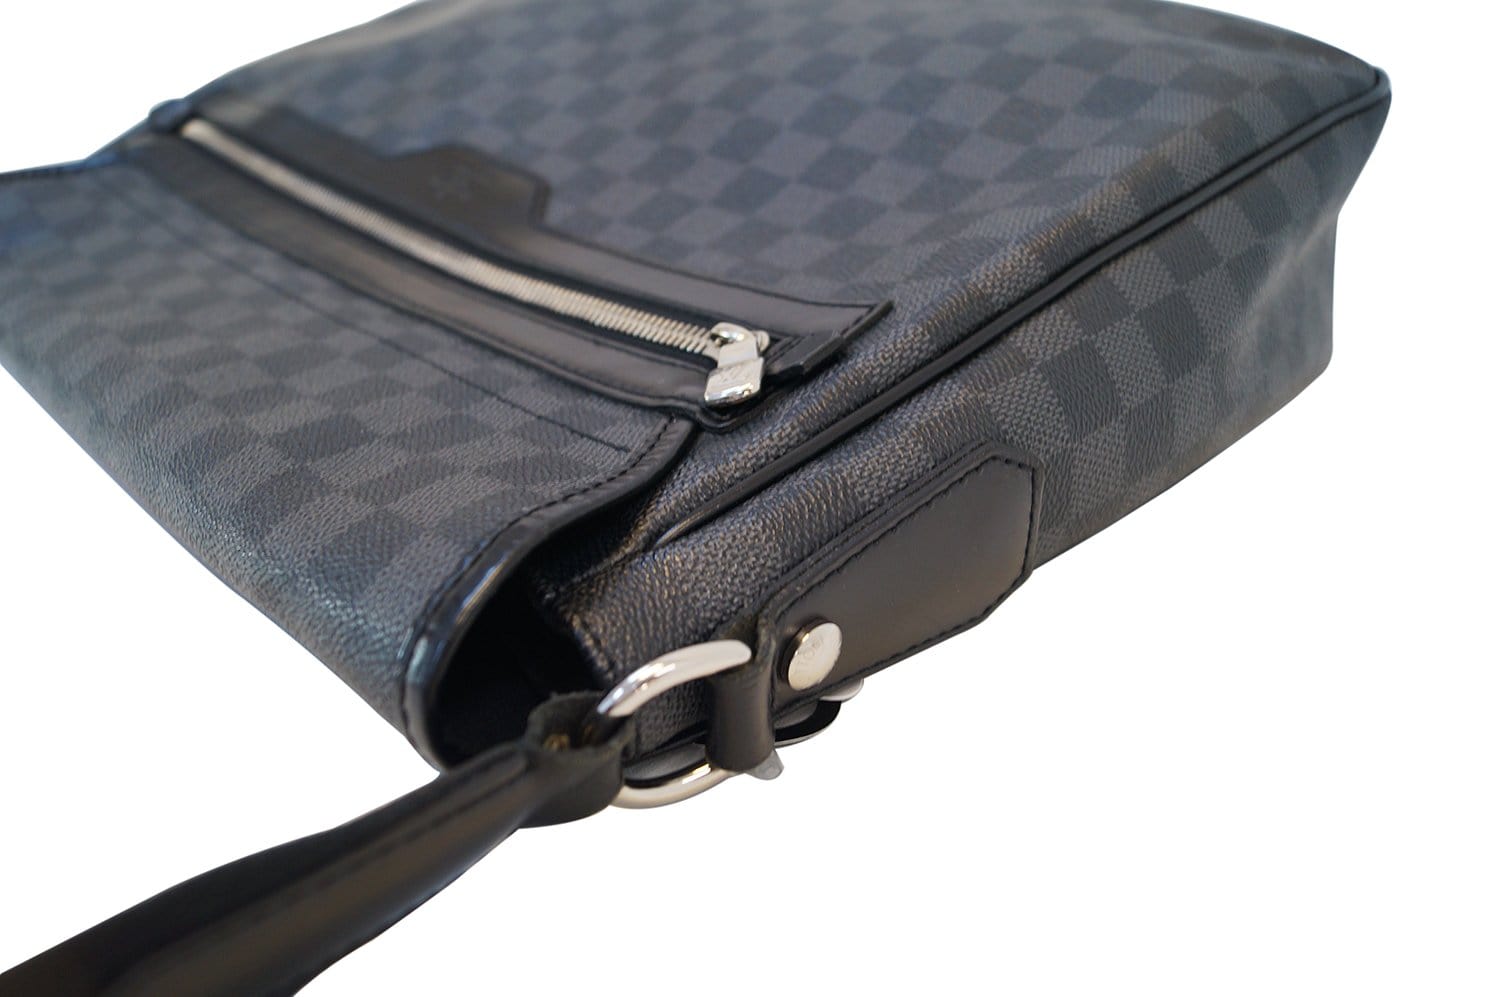 Louis Vuitton Damier Graphite Daniel Messenger Bag Black Cloth ref